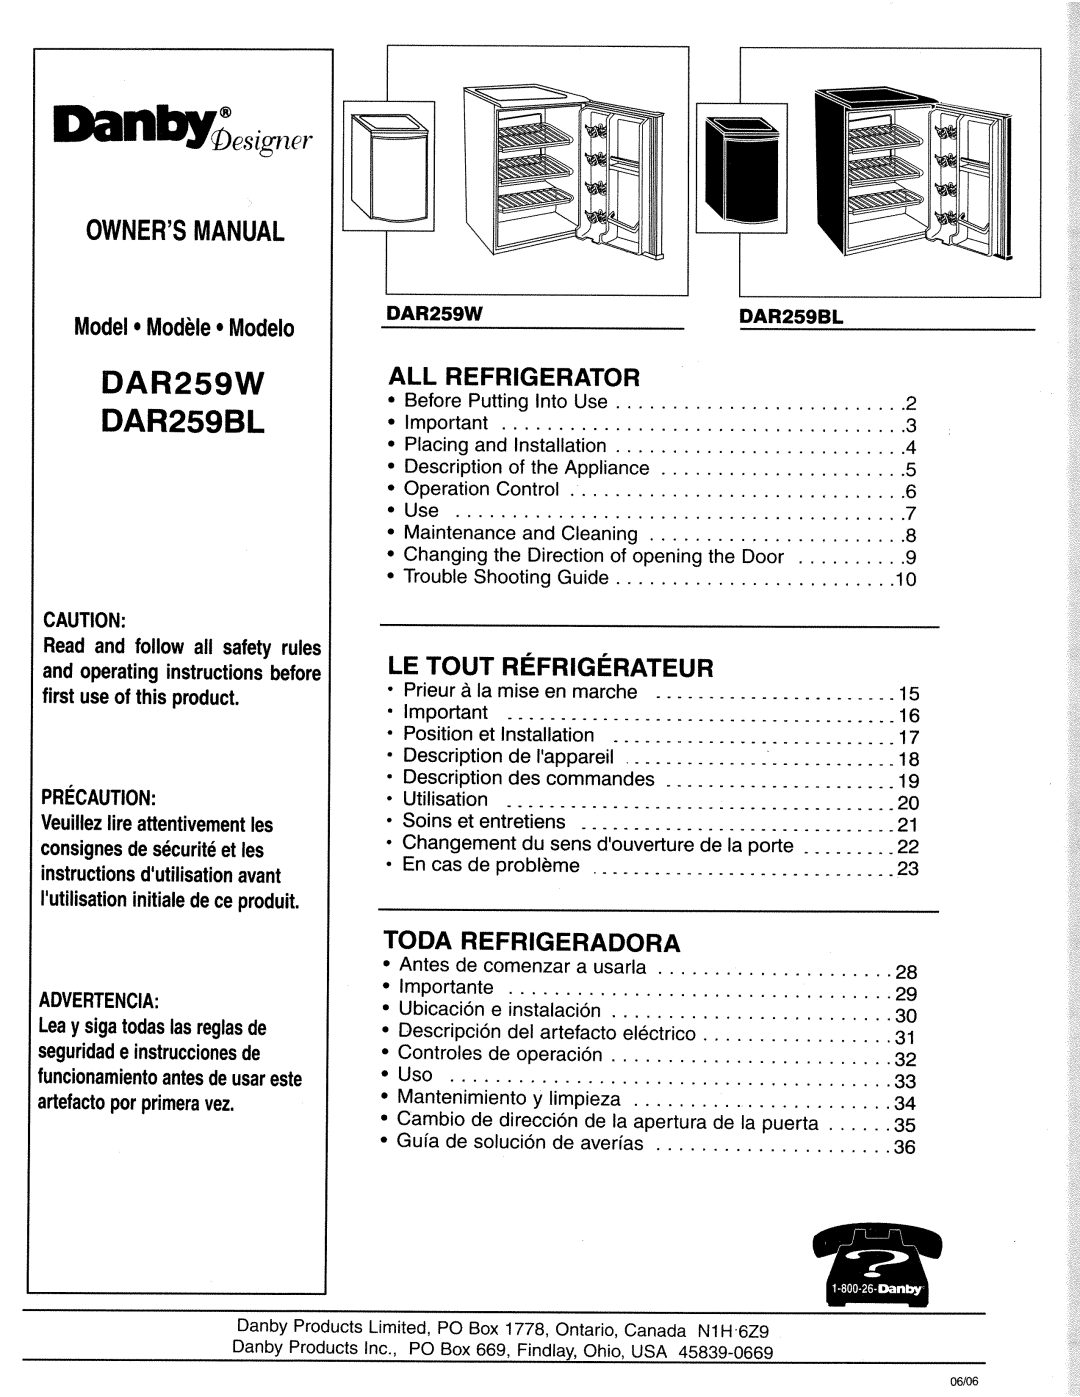 Danby DAR259BL, DAR259W manual 